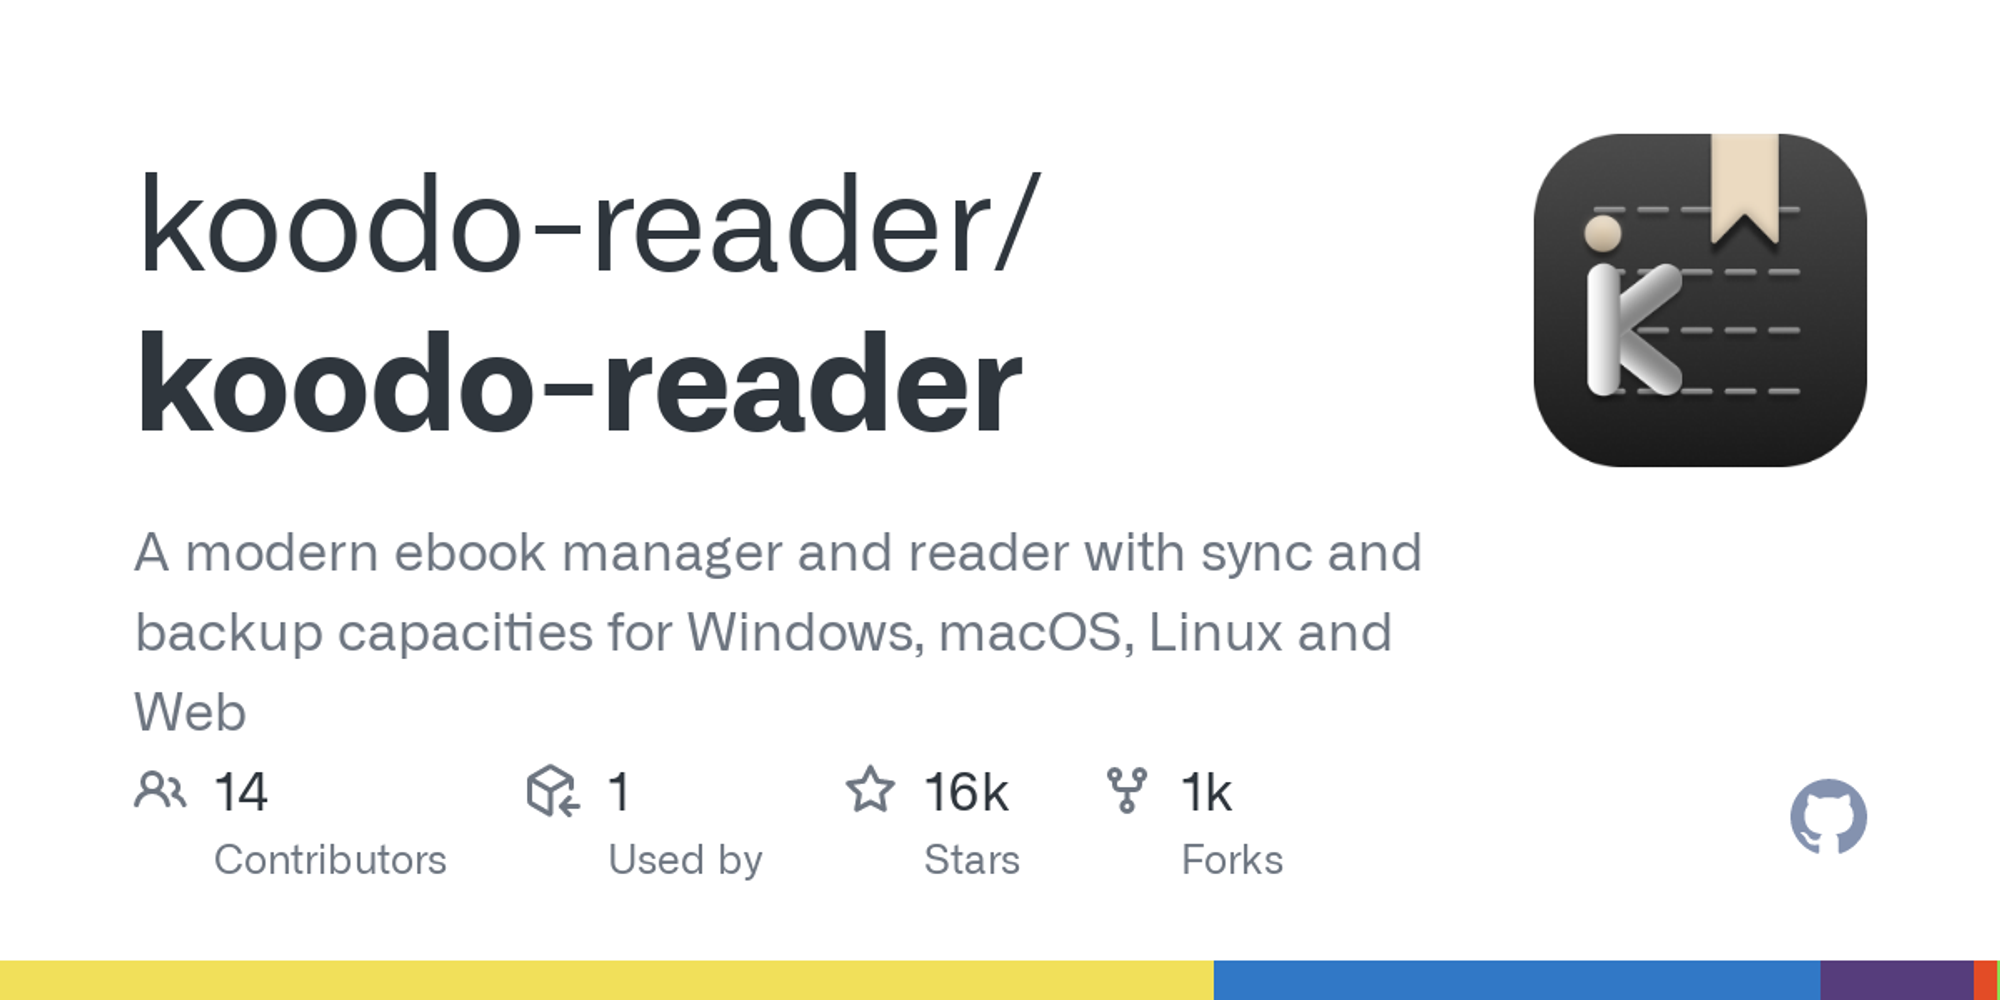 koodo-reader/public/lib at master · troyeguo/koodo-reader